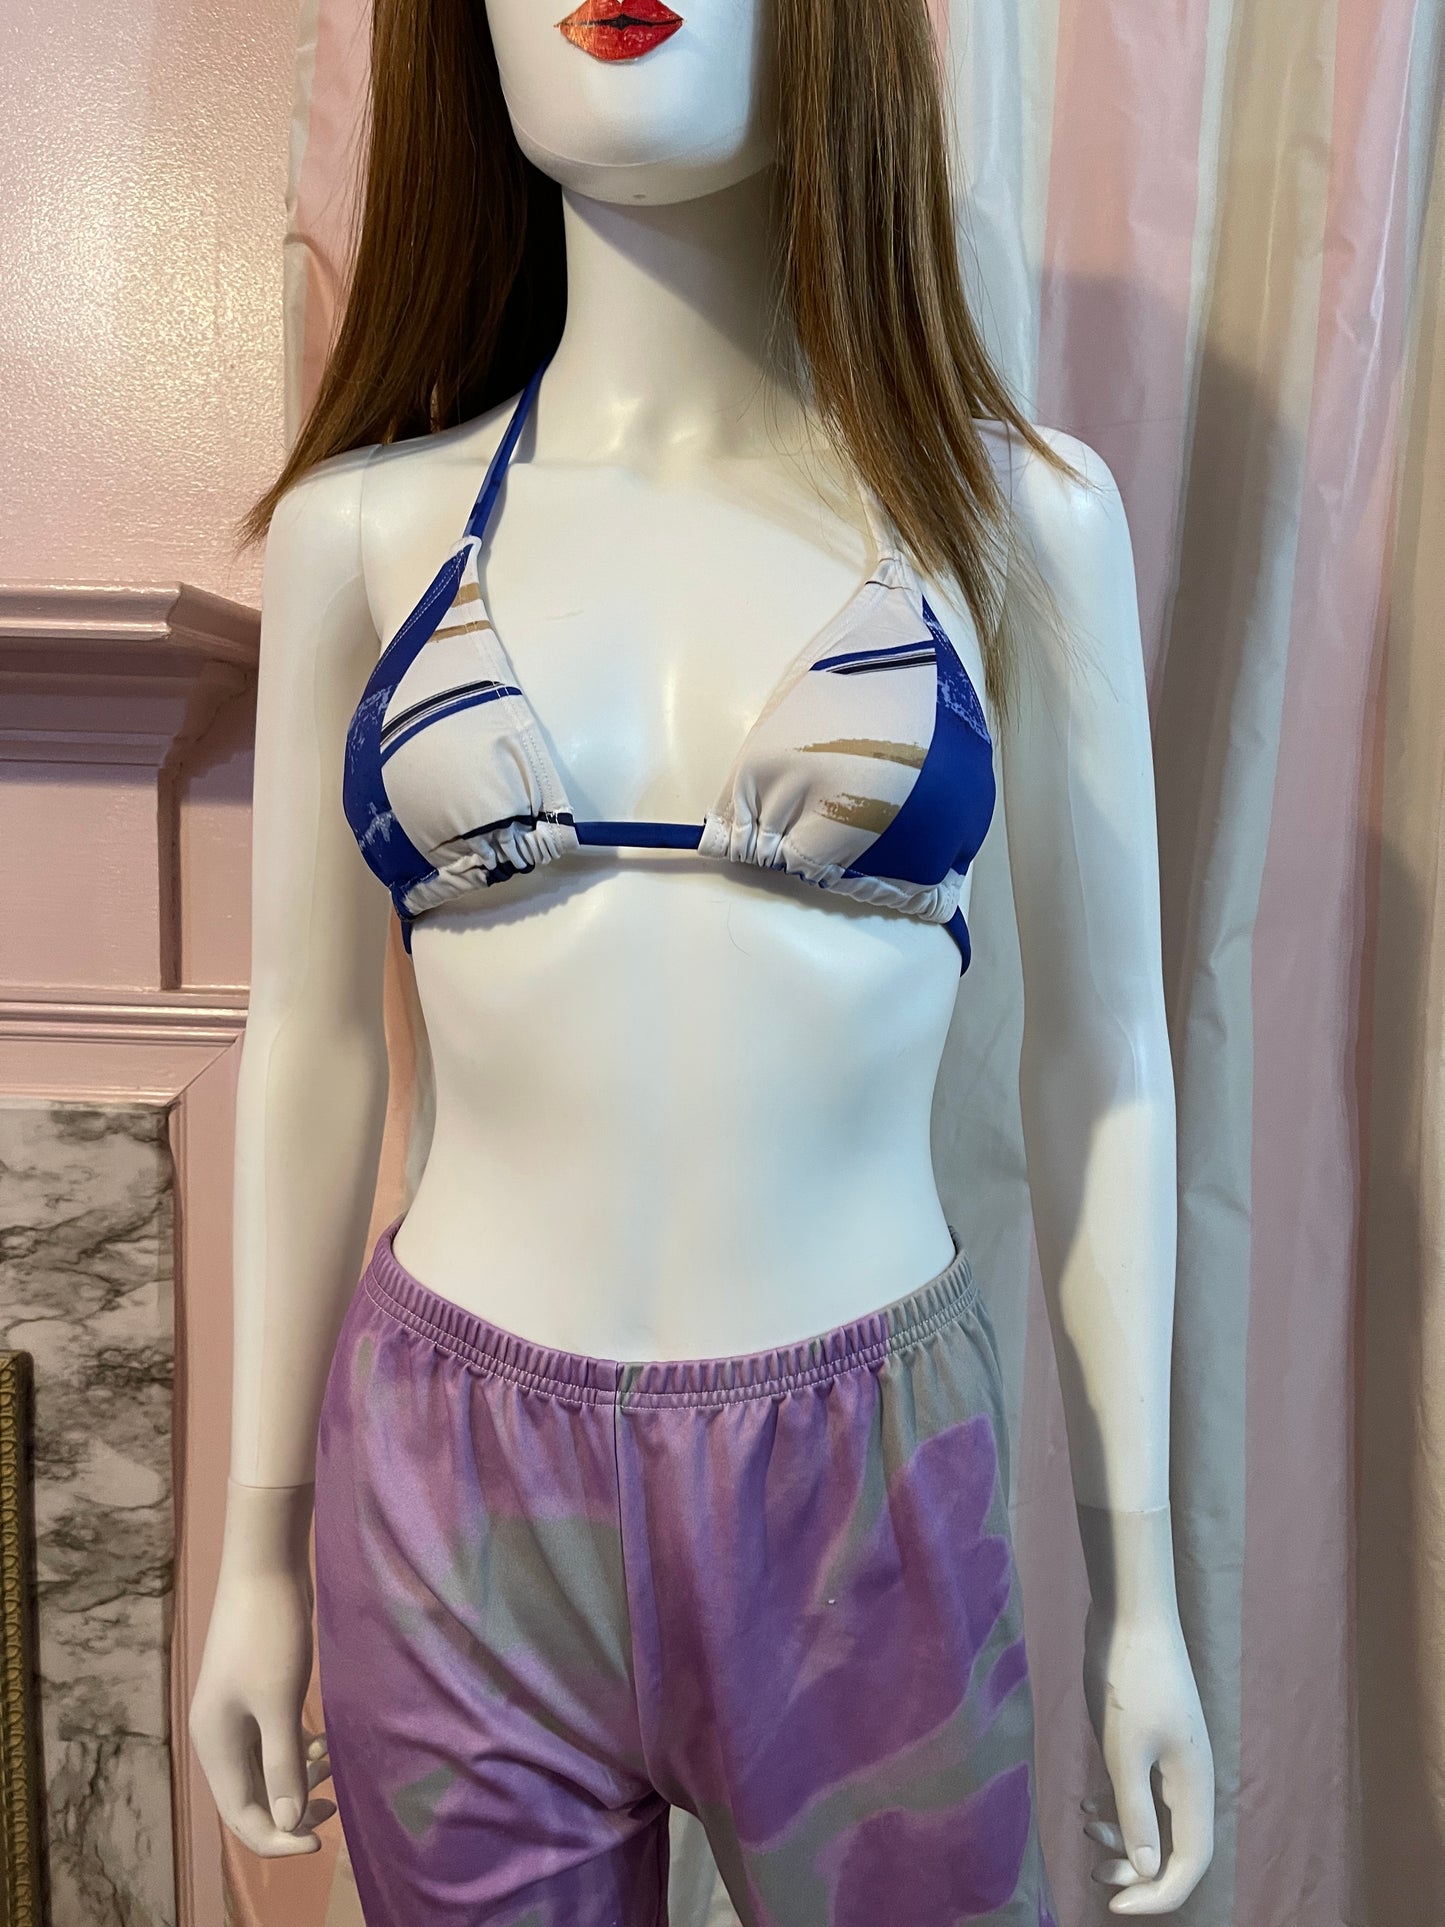 Purple leggings and blue bikini top